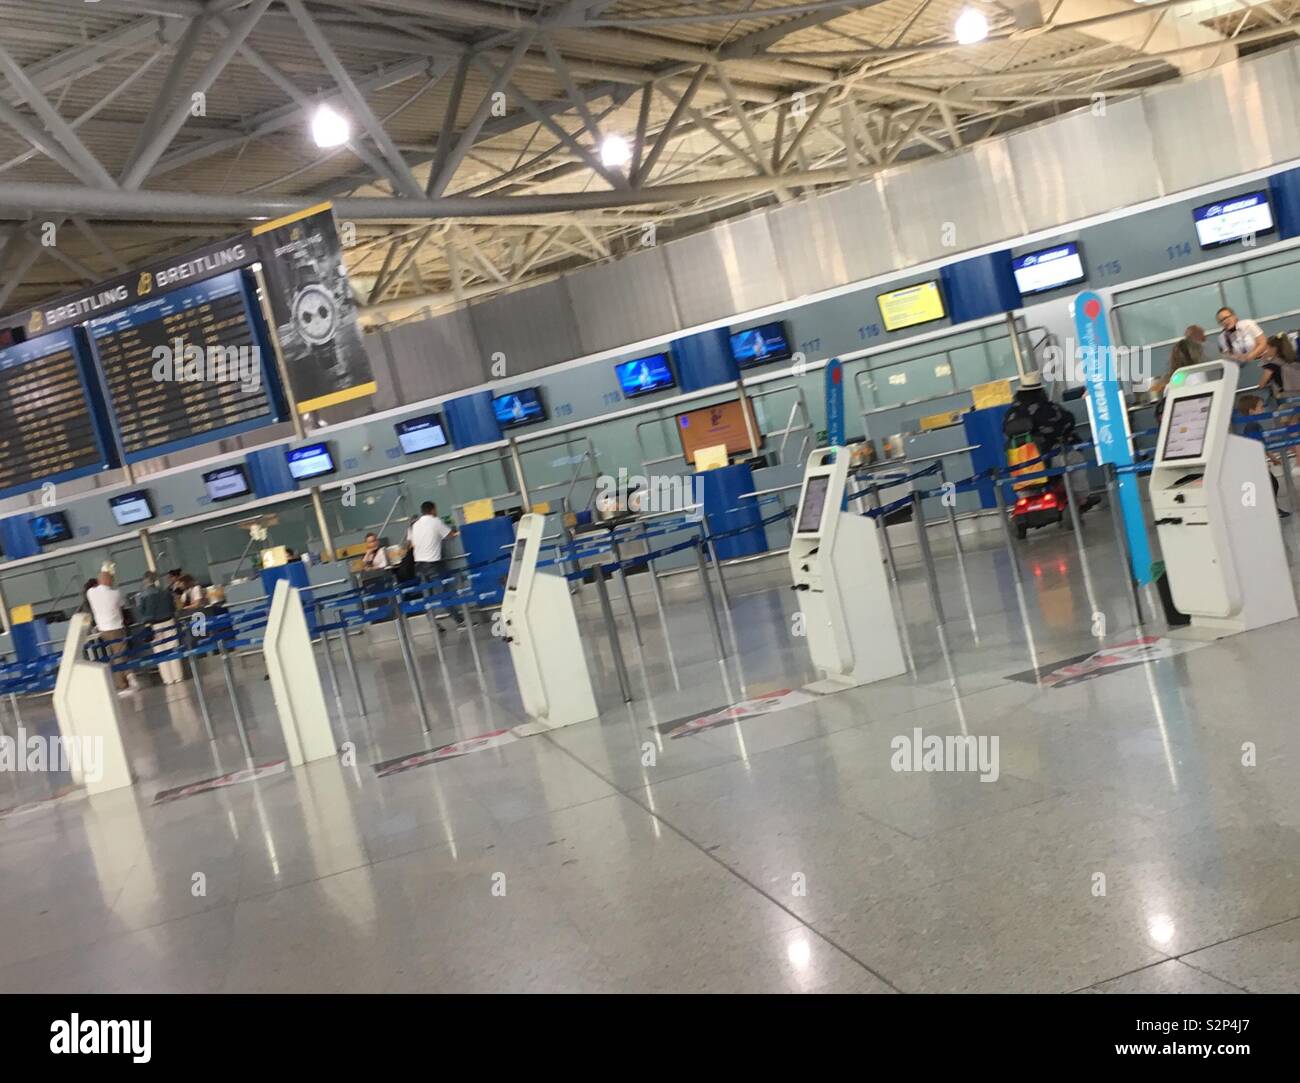 Banchi per il check-in all'Aeroporto Internazionale di Atene (AIA), Attica, Grecia. Foto Stock